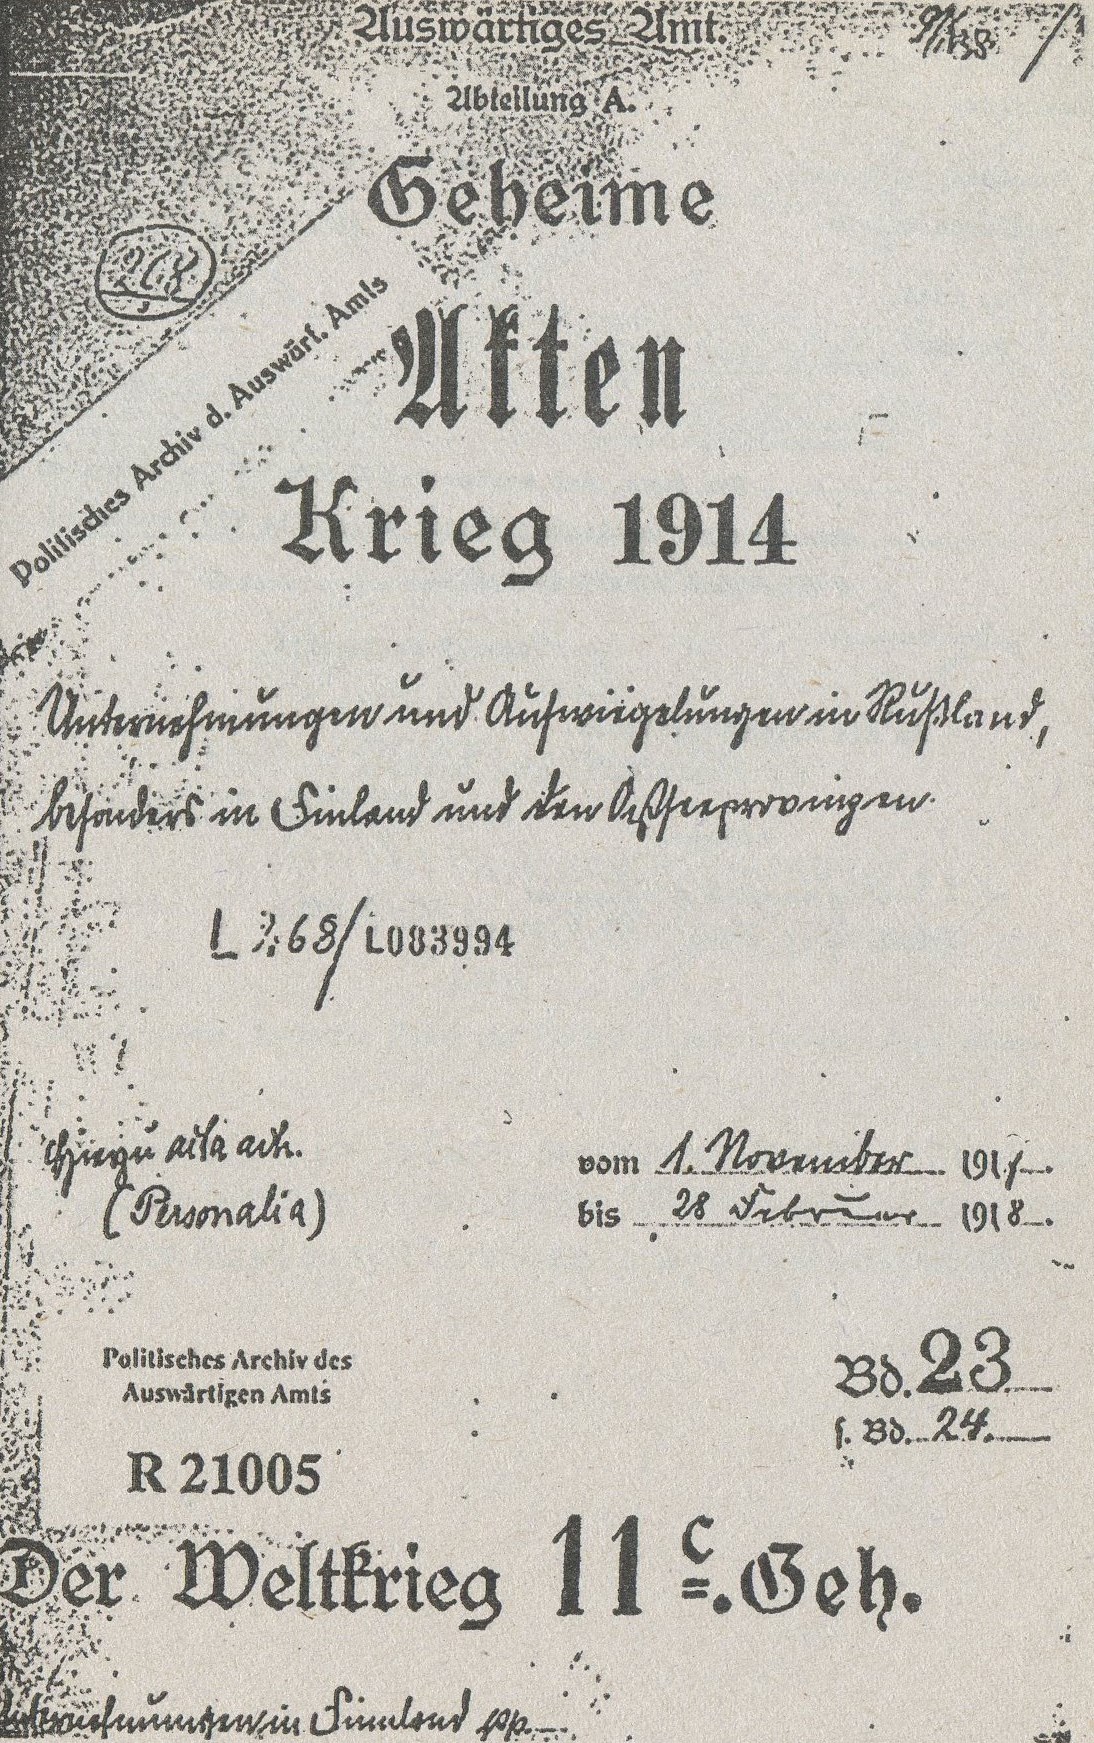 Обложка собрания документов в германском Министерстве иностранных дел